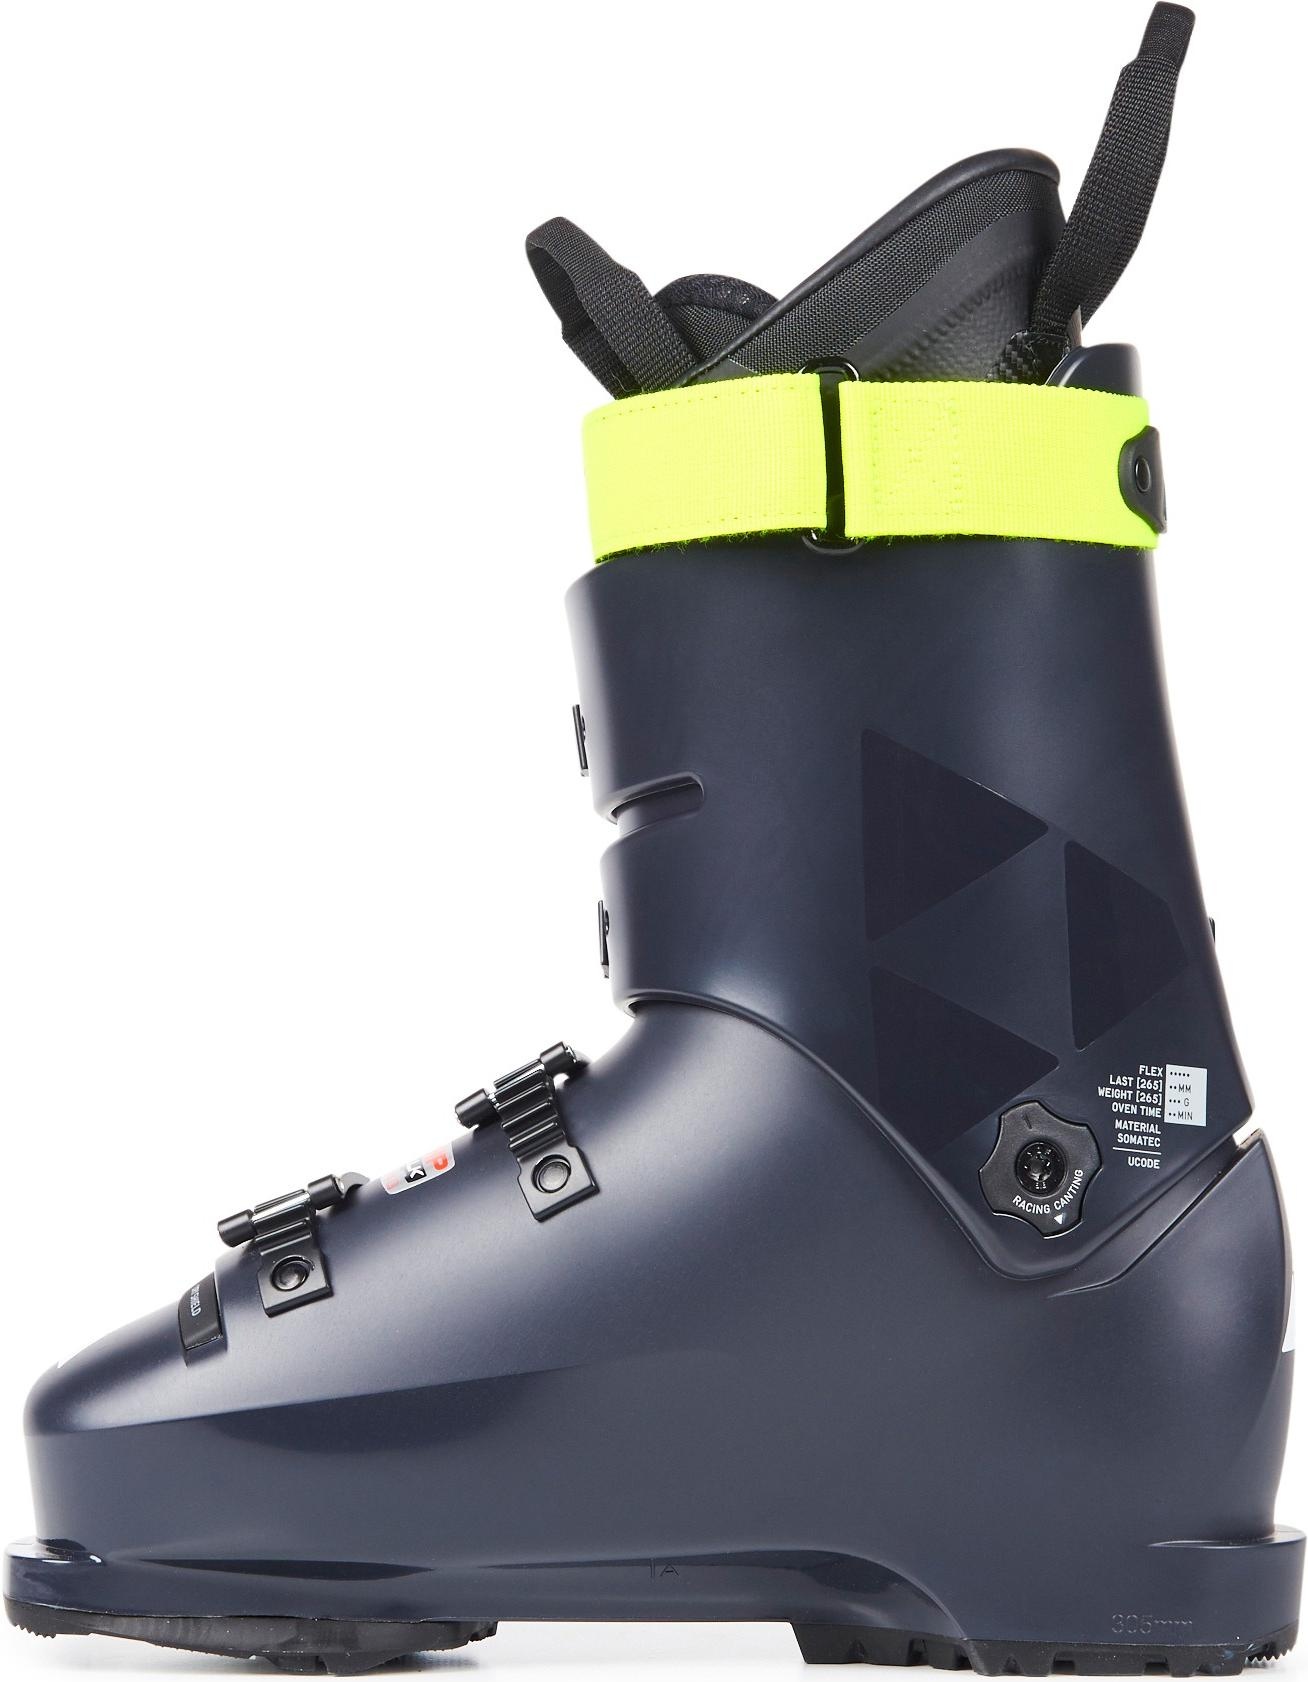 Горнолыжные ботинки Fischer Rc4 The Curv 110 Vacuum Walk 2021, darkgrey/darkgrey, 28.5